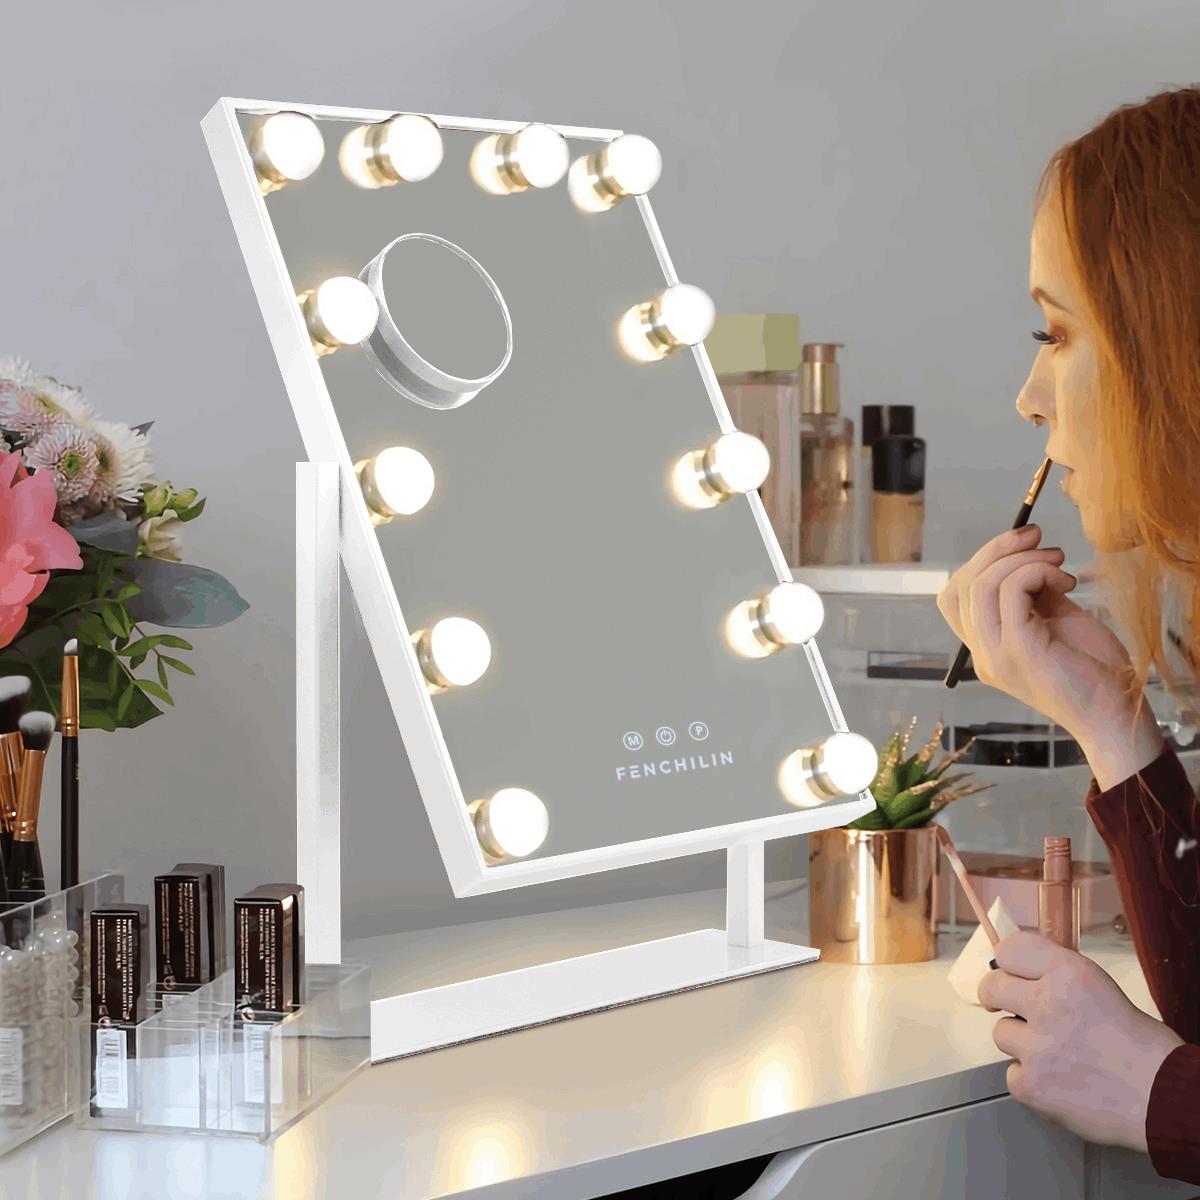 Espejo de tocador con luces espejo de maquillaje con aumento 1X10X